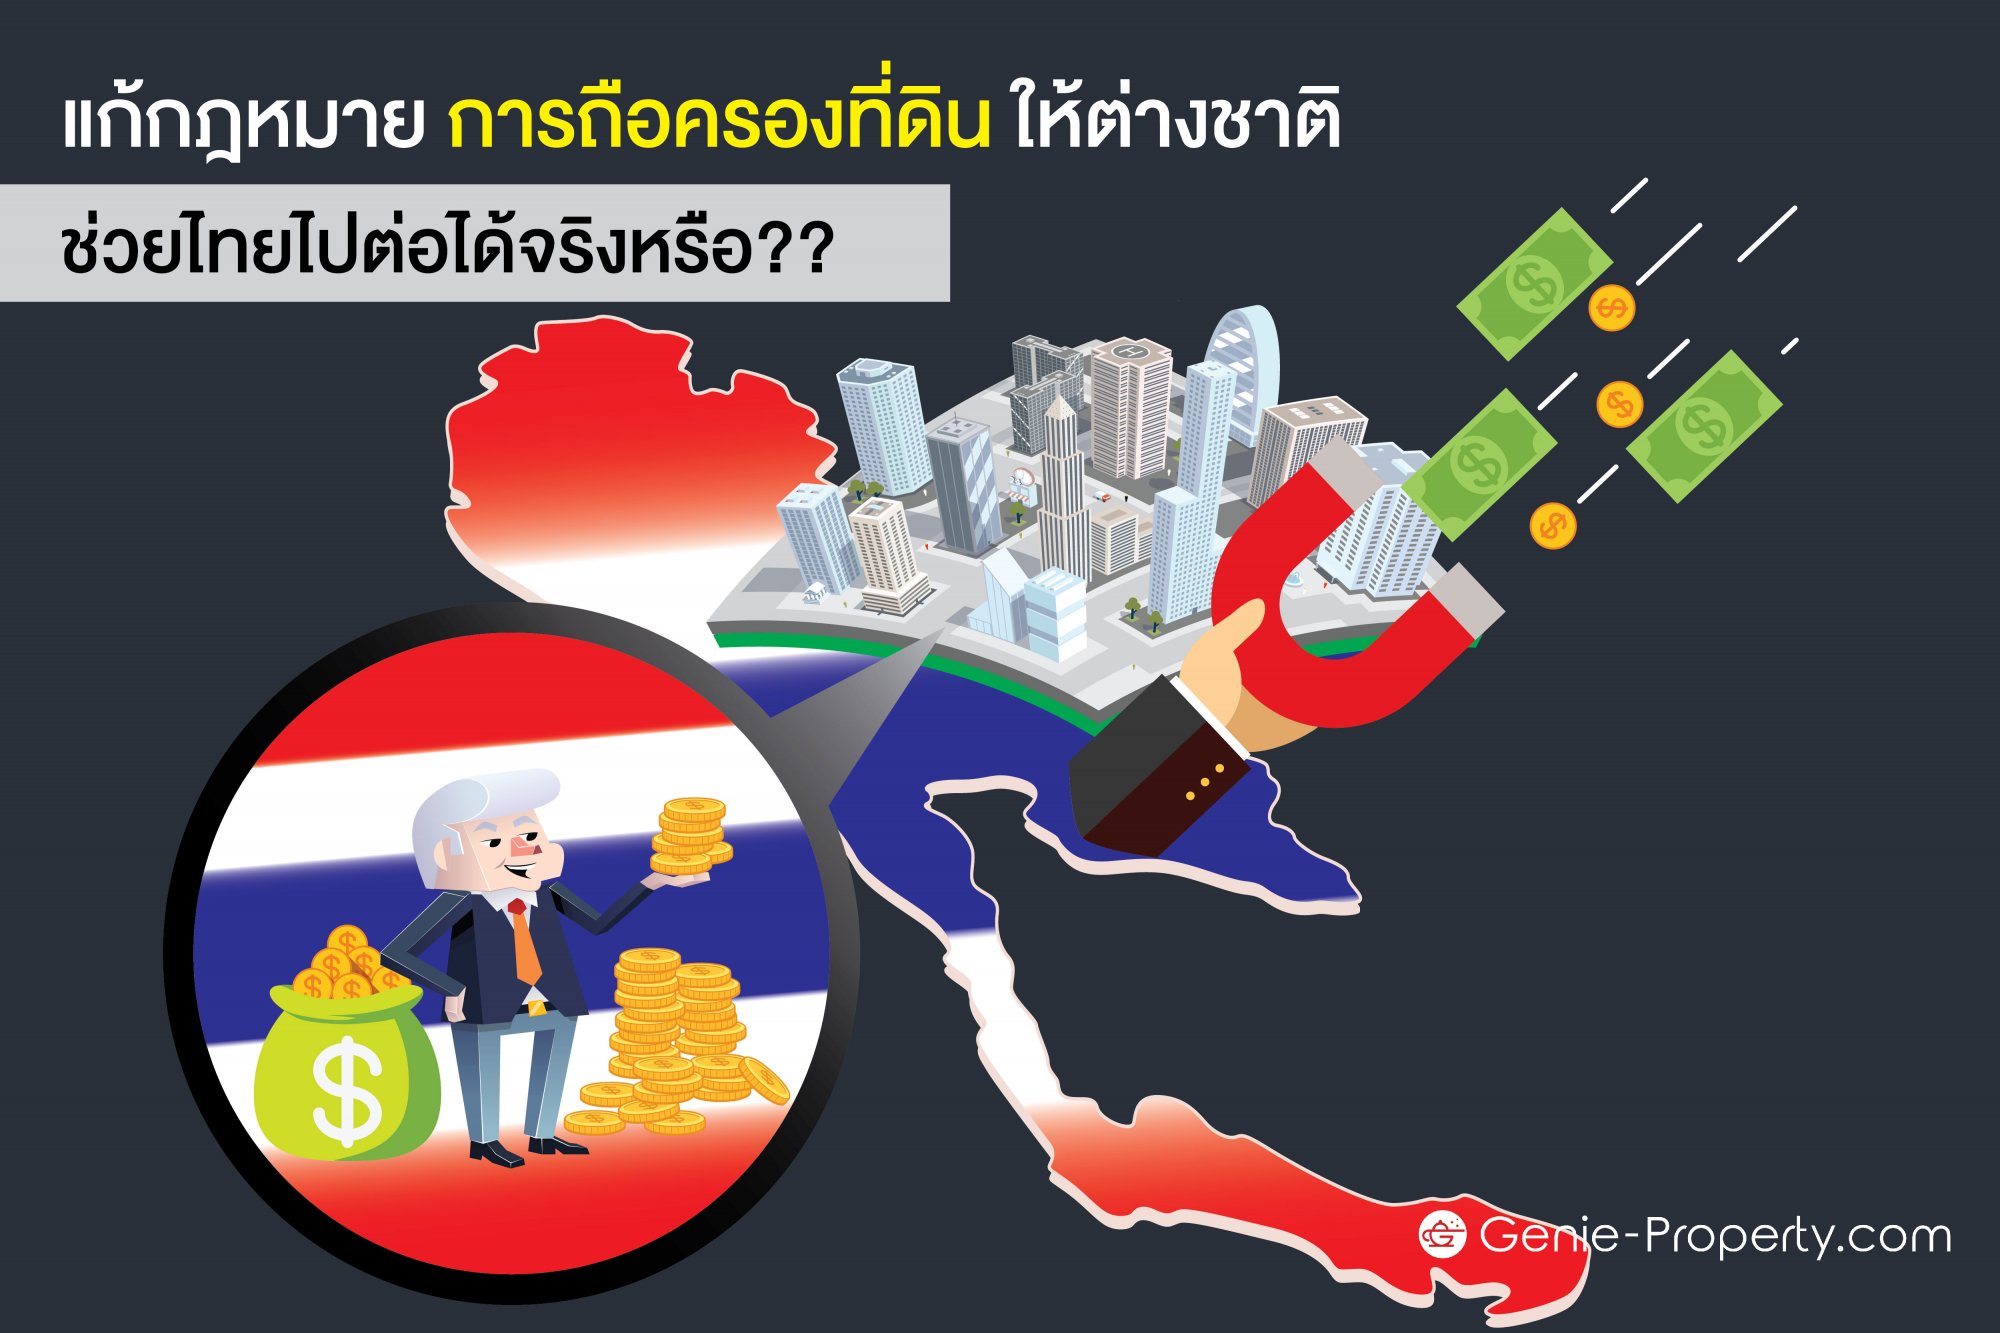 image for แก้กฎหมาย การถือครองที่ดิน ให้ต่างชาติ ช่วยไทยไปต่อได้จริงหรือ??